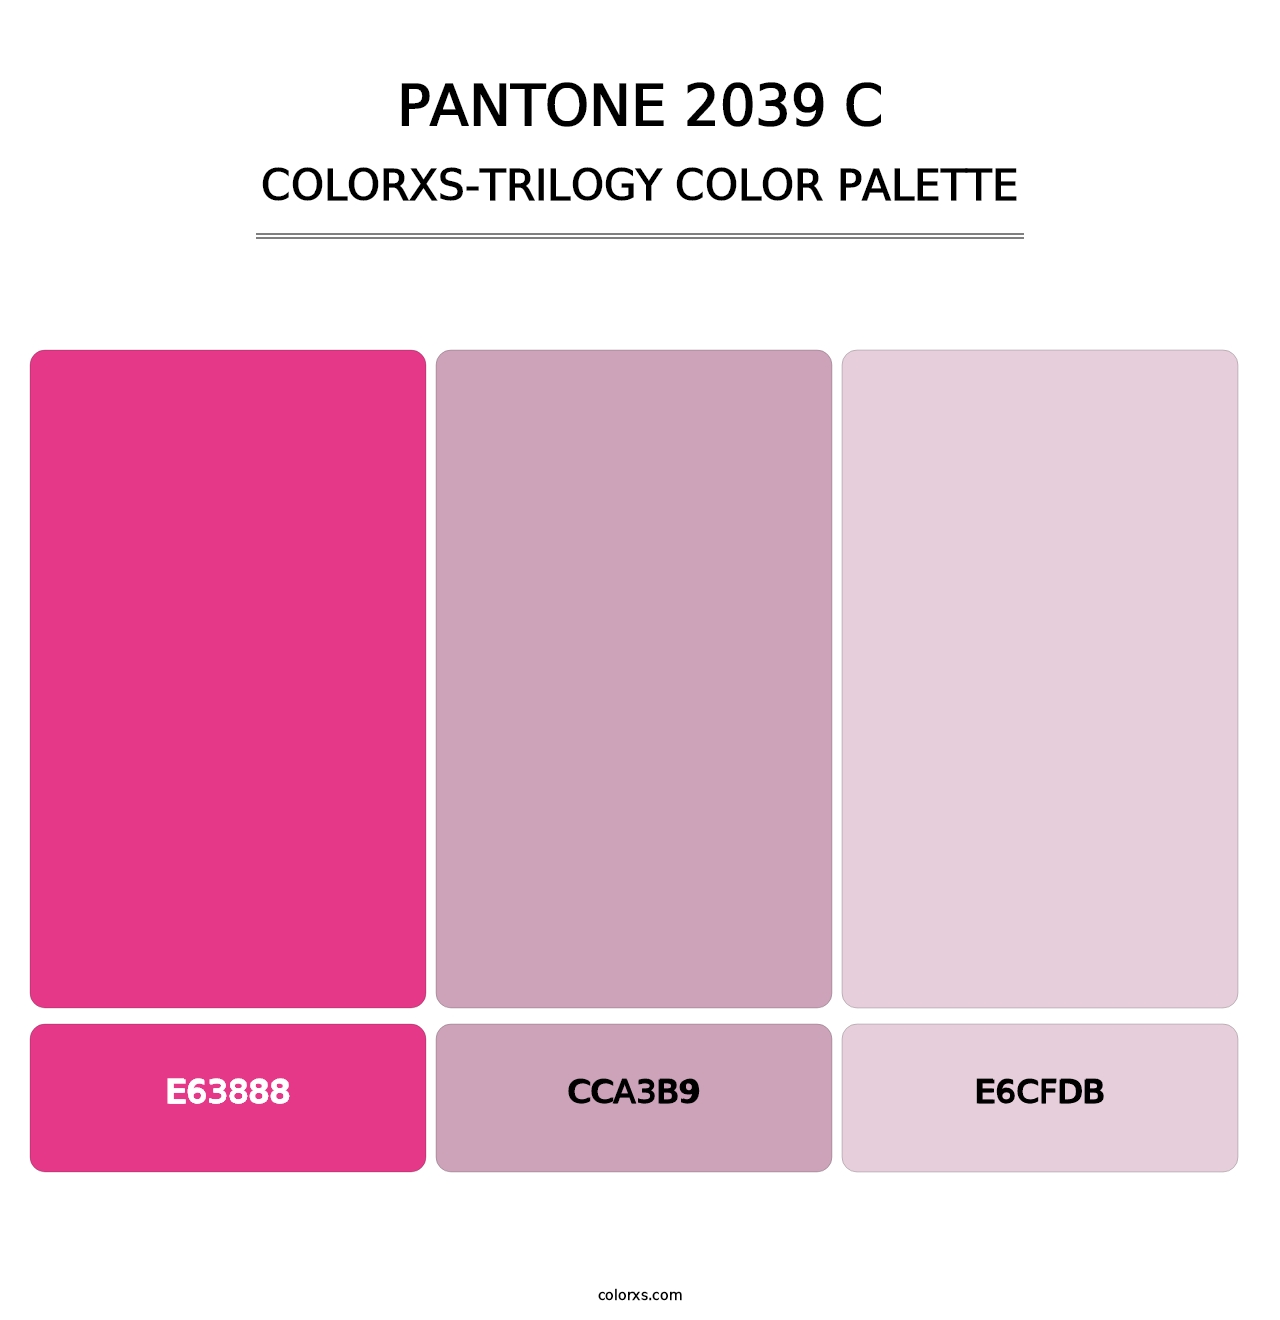 PANTONE 2039 C - Colorxs Trilogy Palette